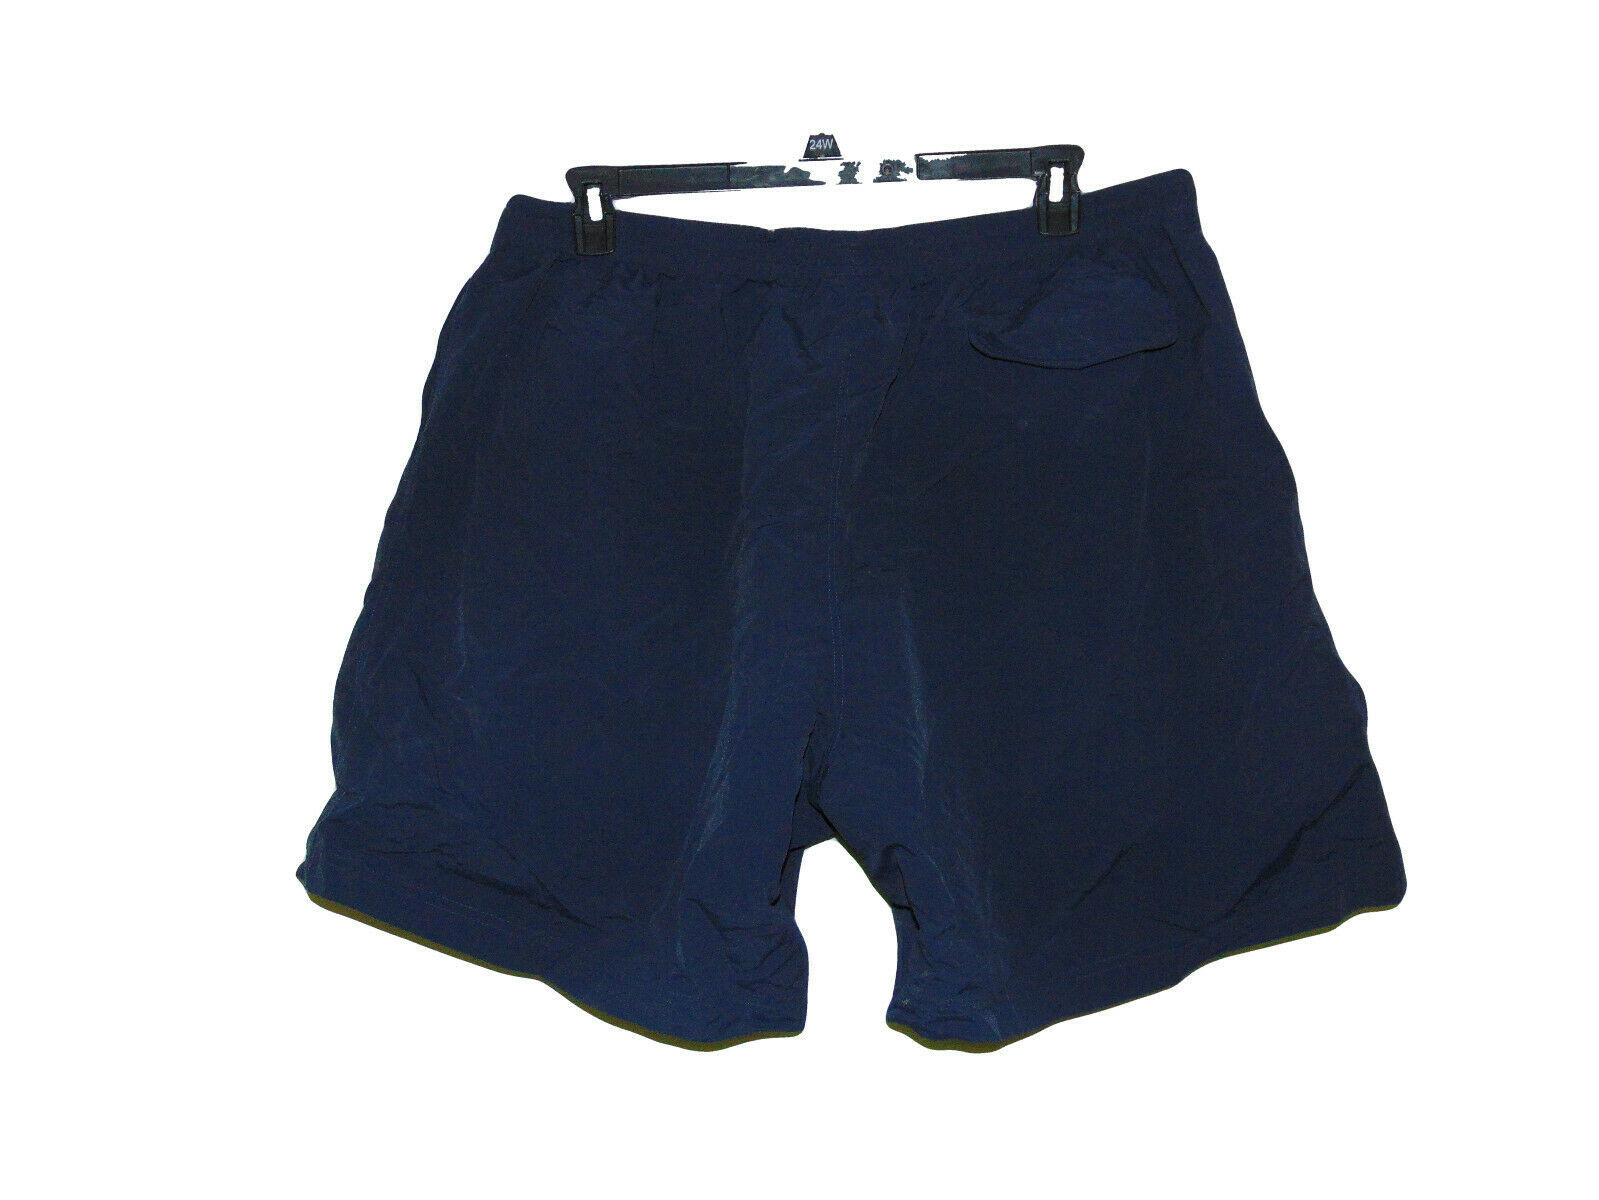 Champion Navy Blue Pull Up Nylon Shorts Size Xxxl Nwot - Shorts